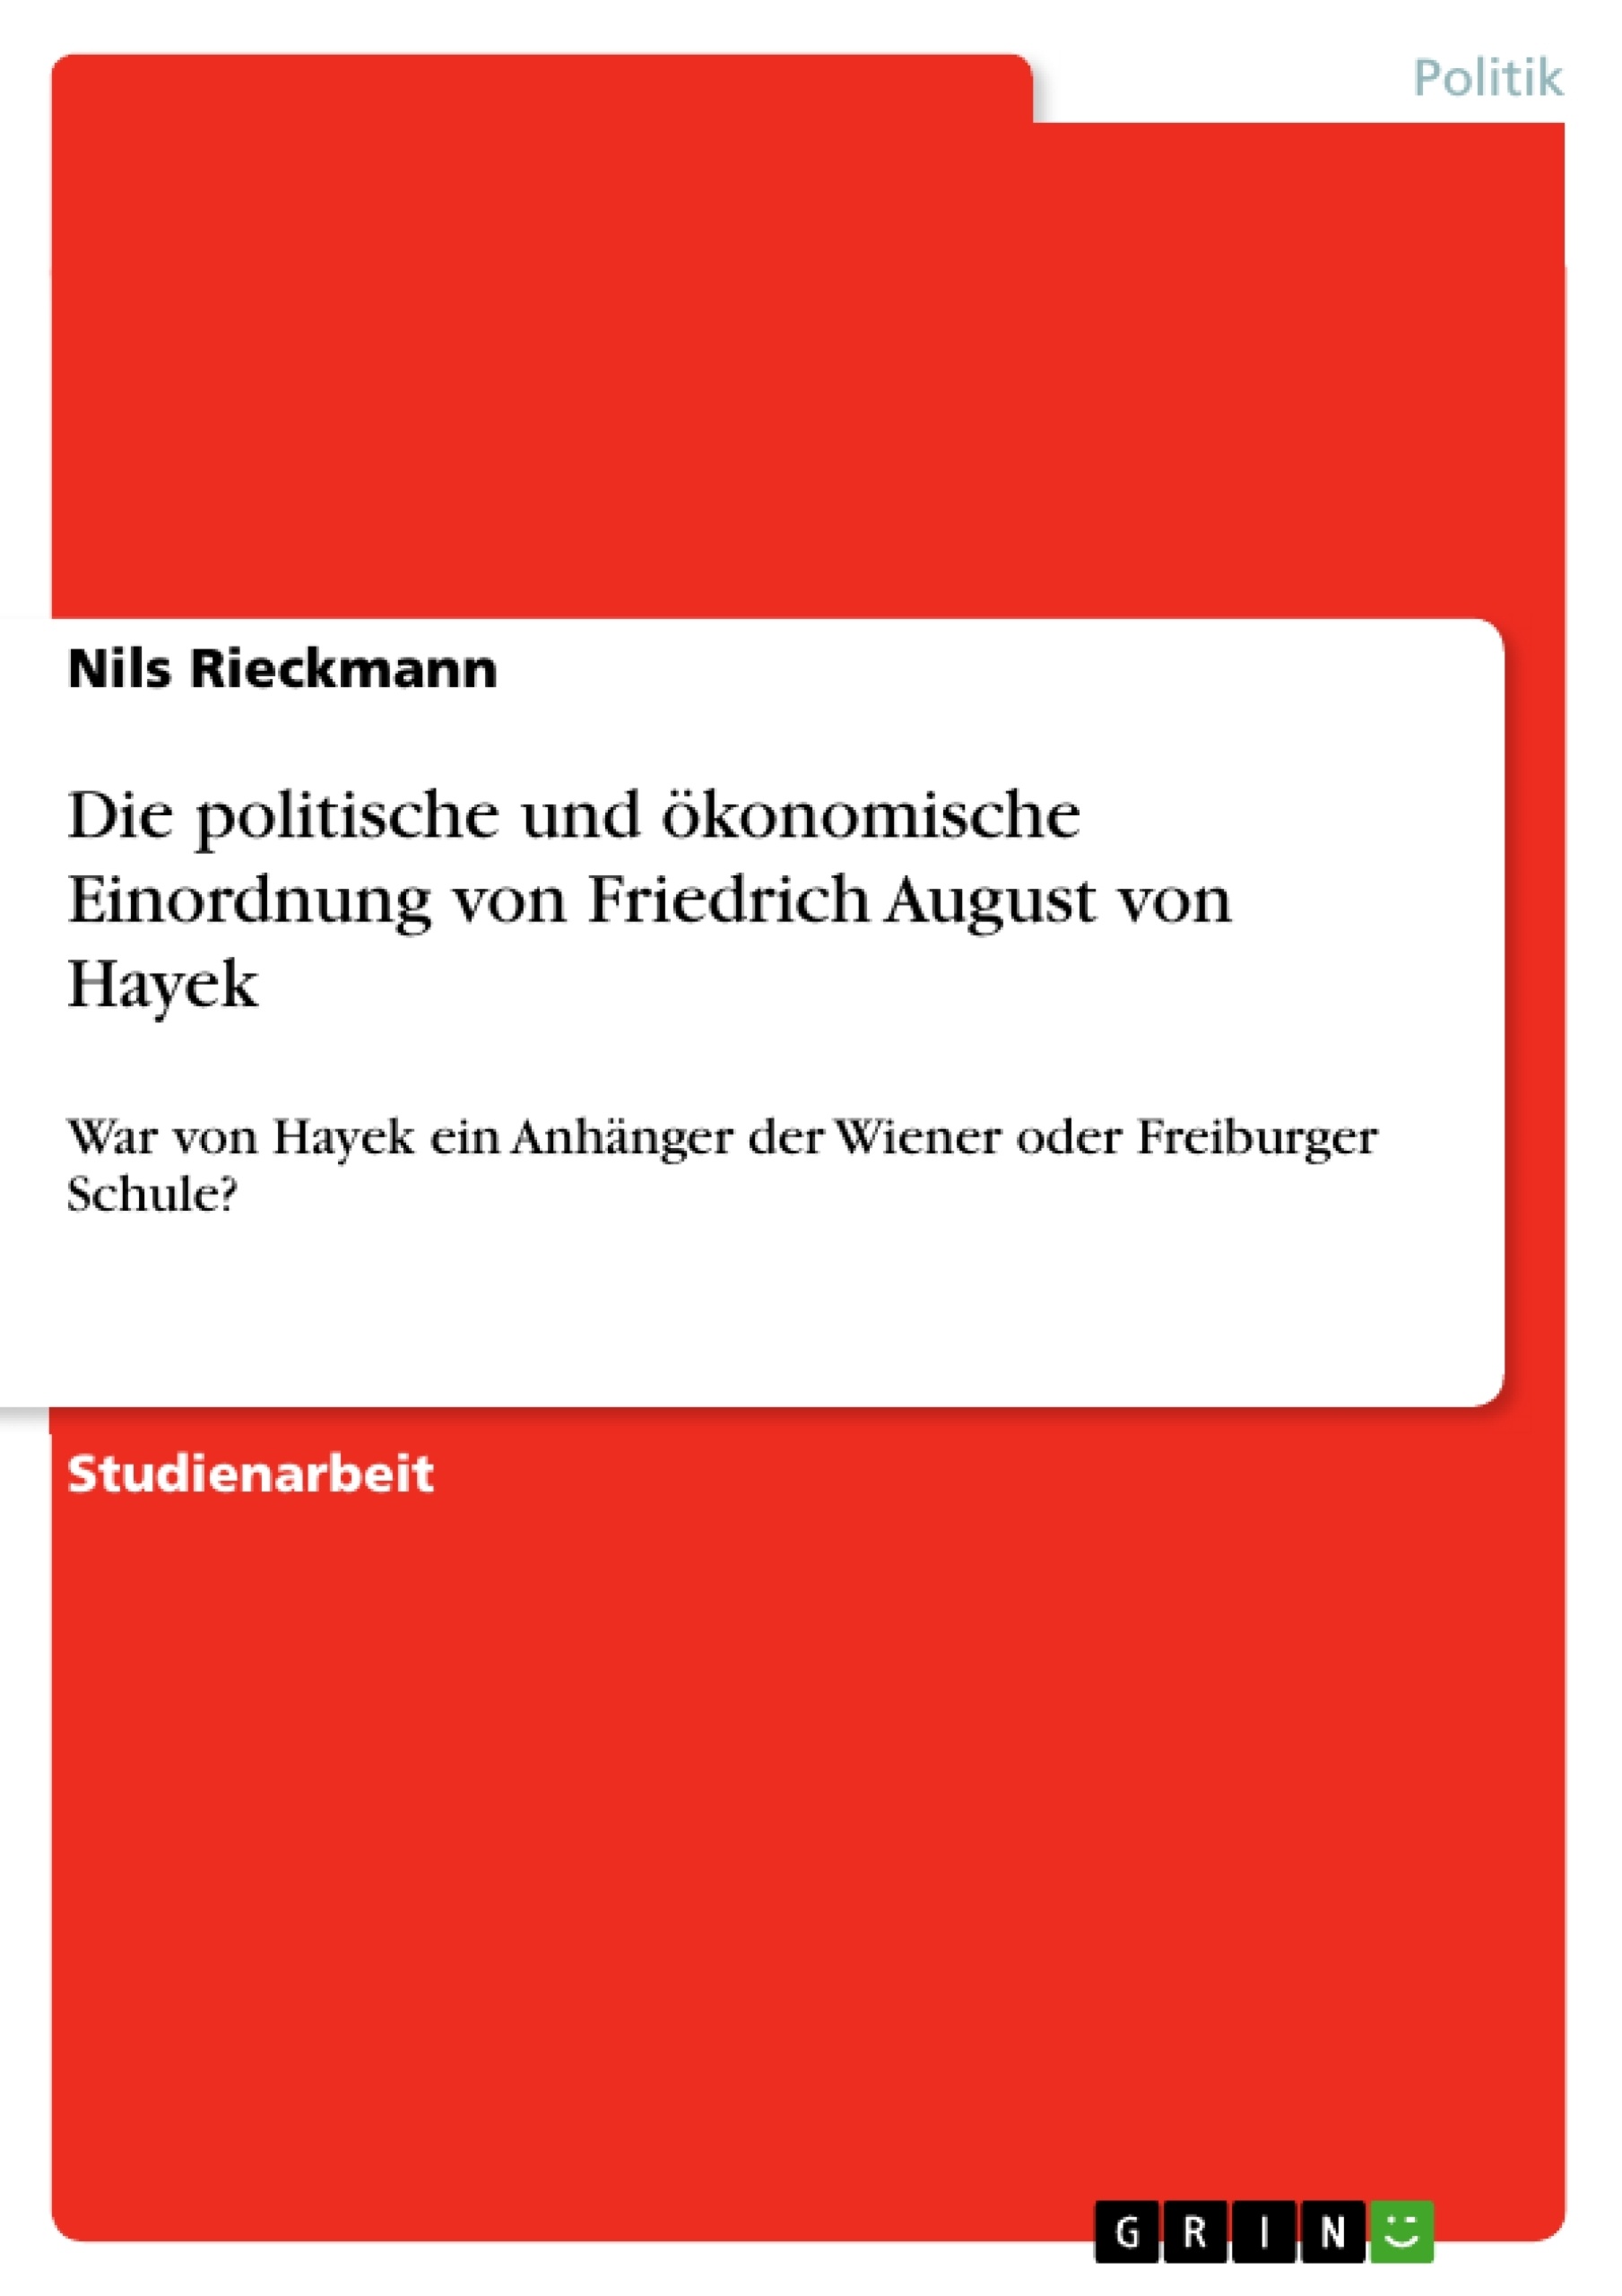 Title: Die politische und ökonomische Einordnung von Friedrich August von Hayek